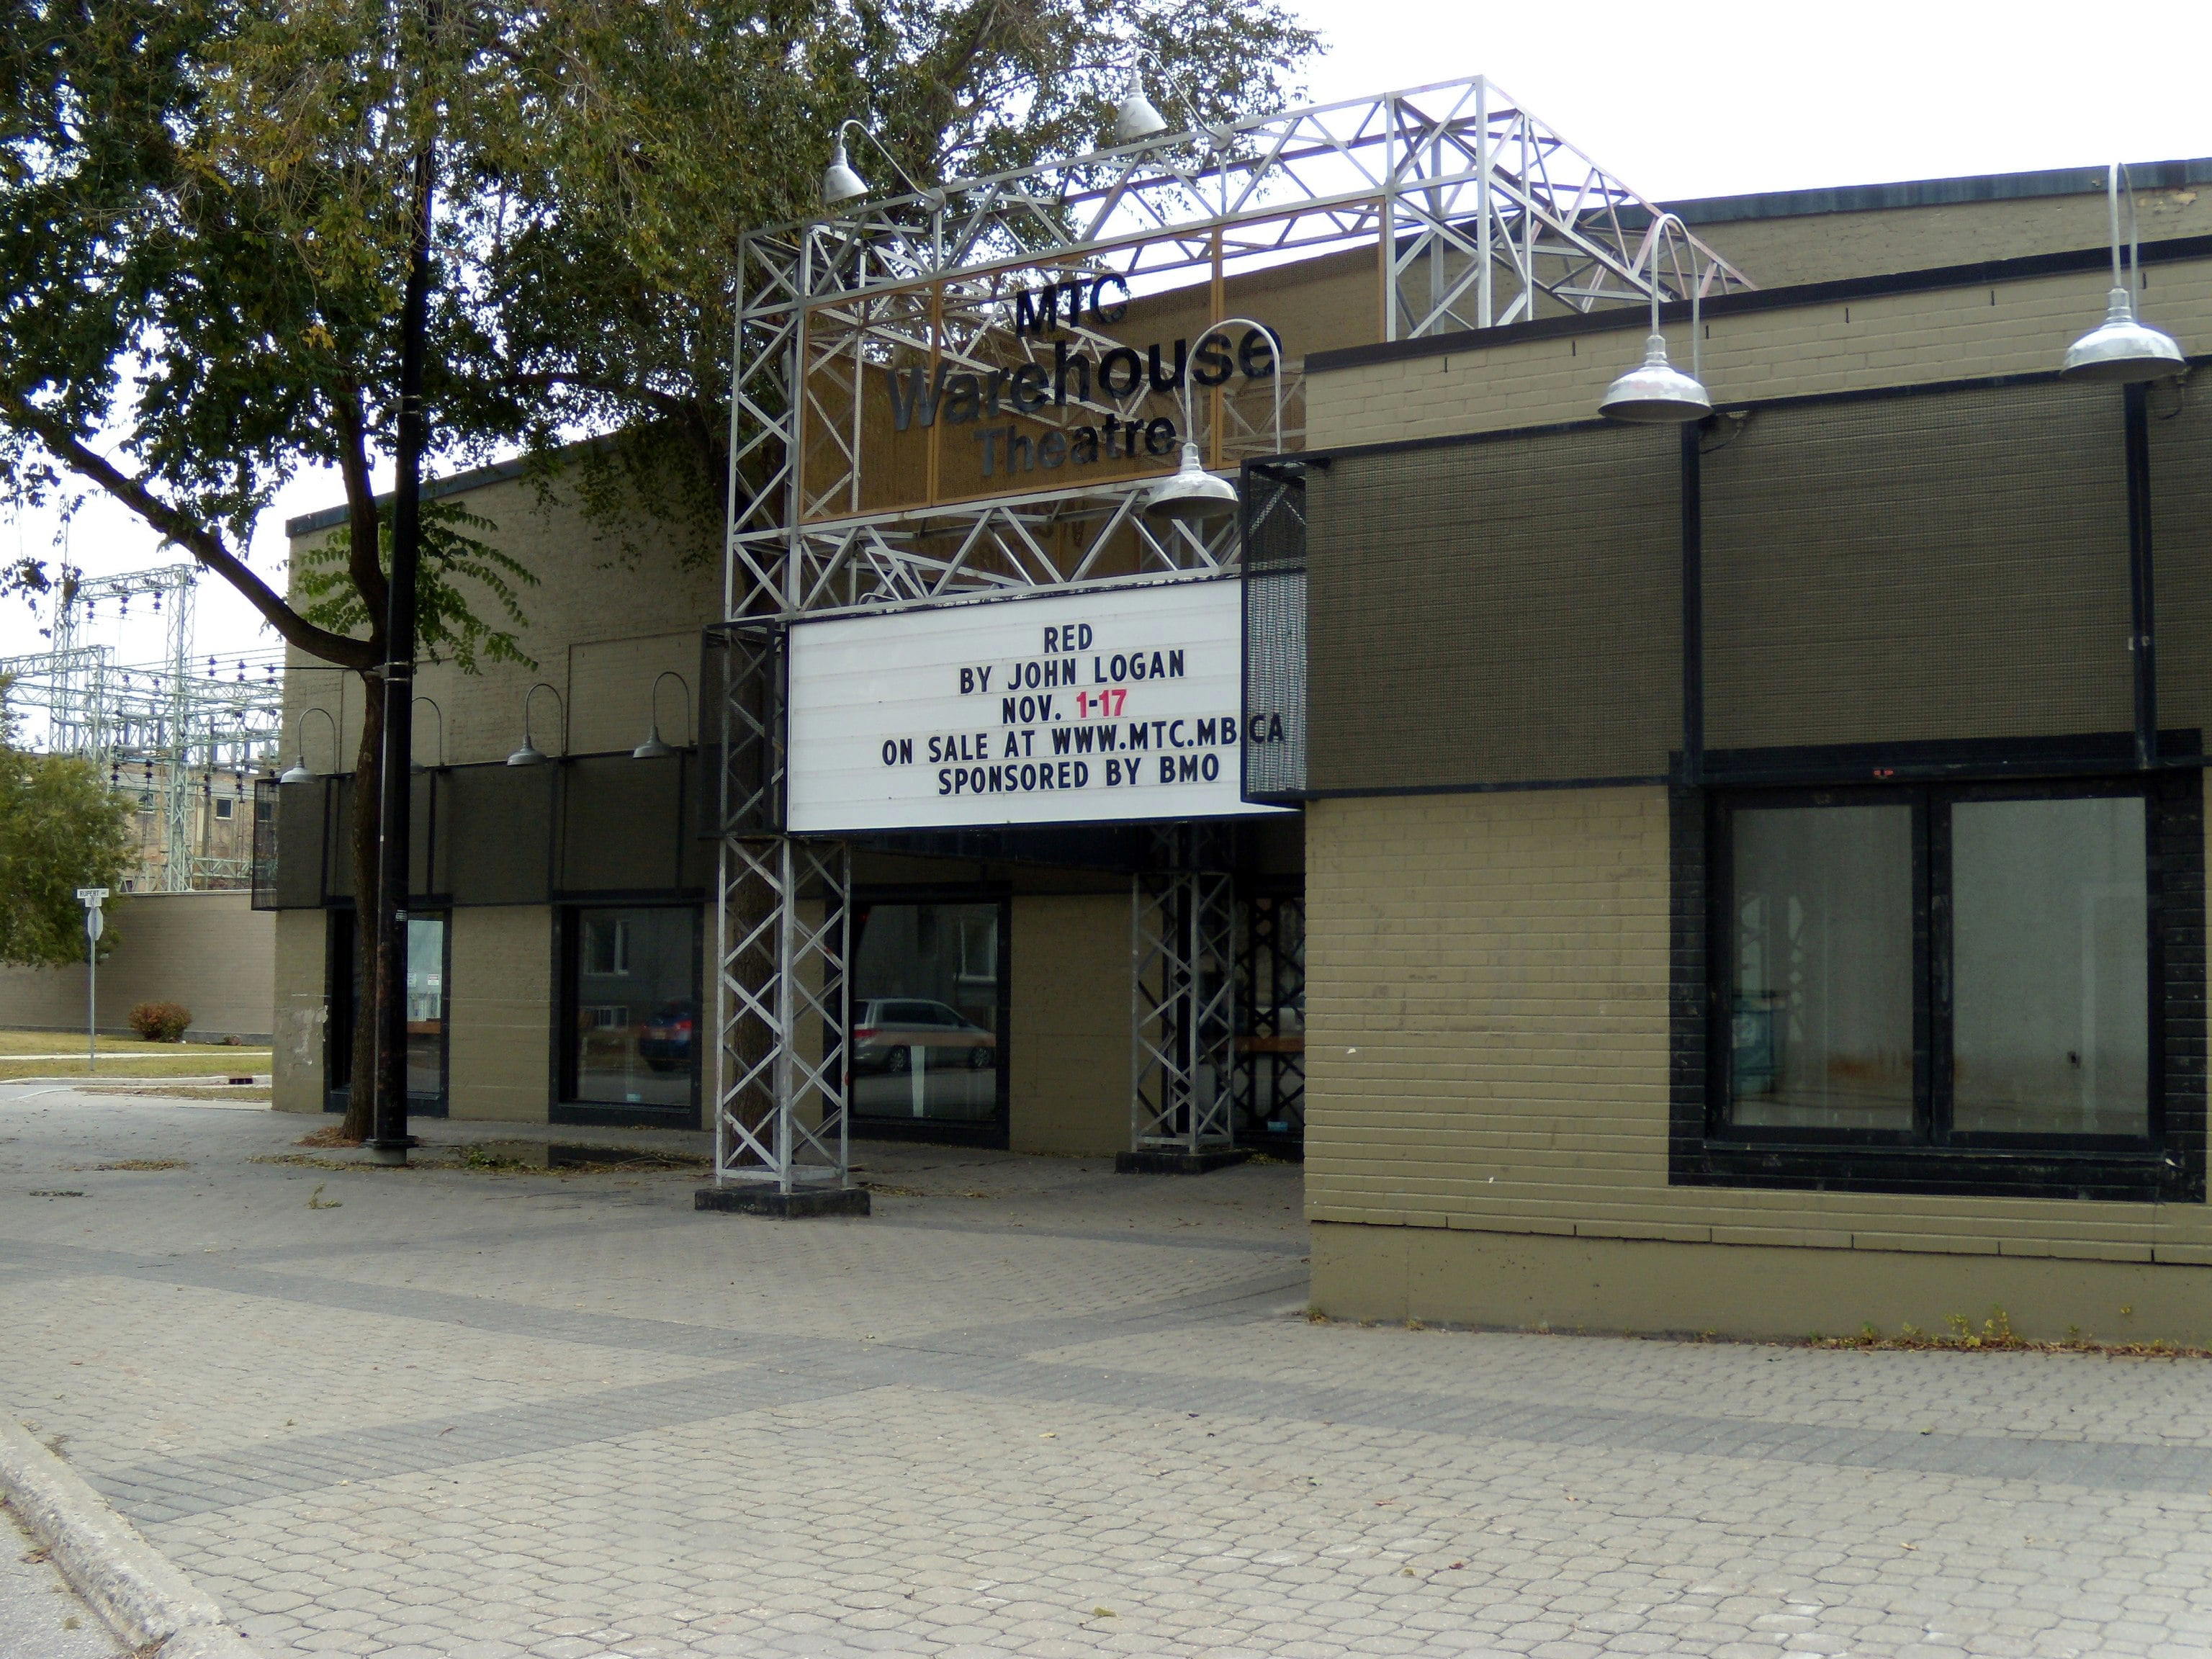 Royal Manitoba Theatre Centre